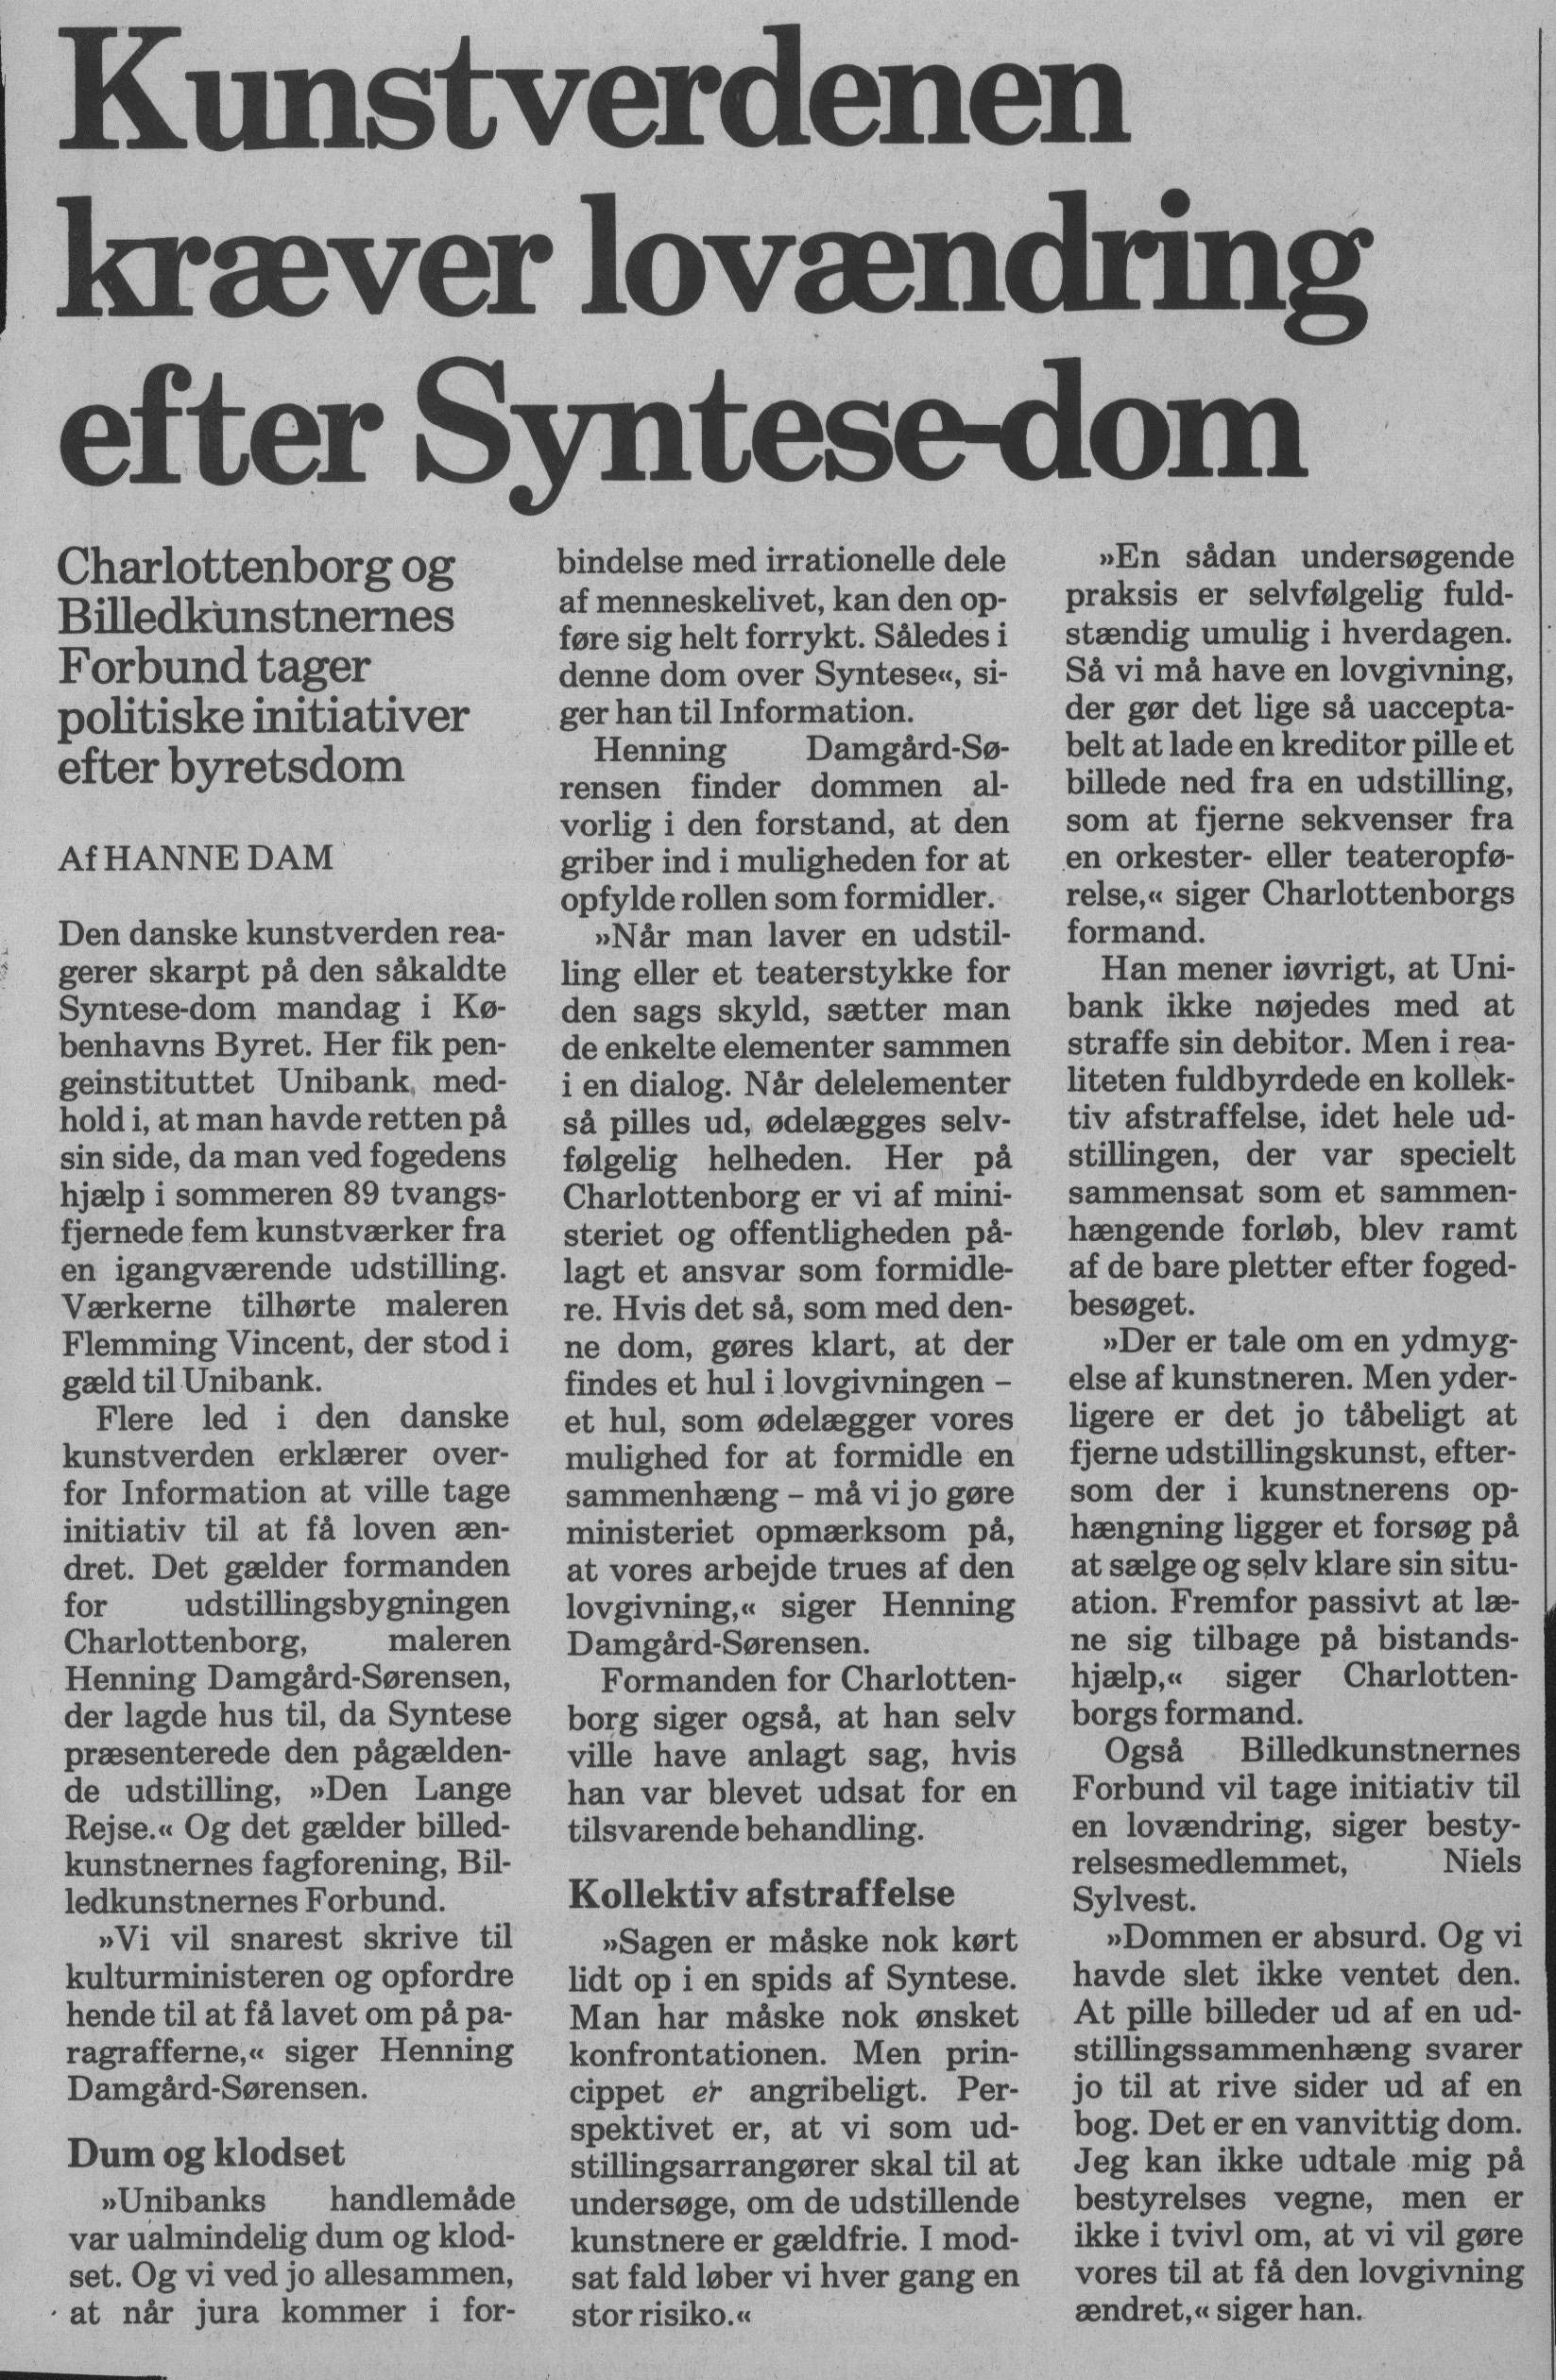 Kunstverdenen kræver lovændring efter Syntese-dom. Omtale (Retssag. Den lange rejse, Charlottenborg, København 1989). Hanne Dam. Information.